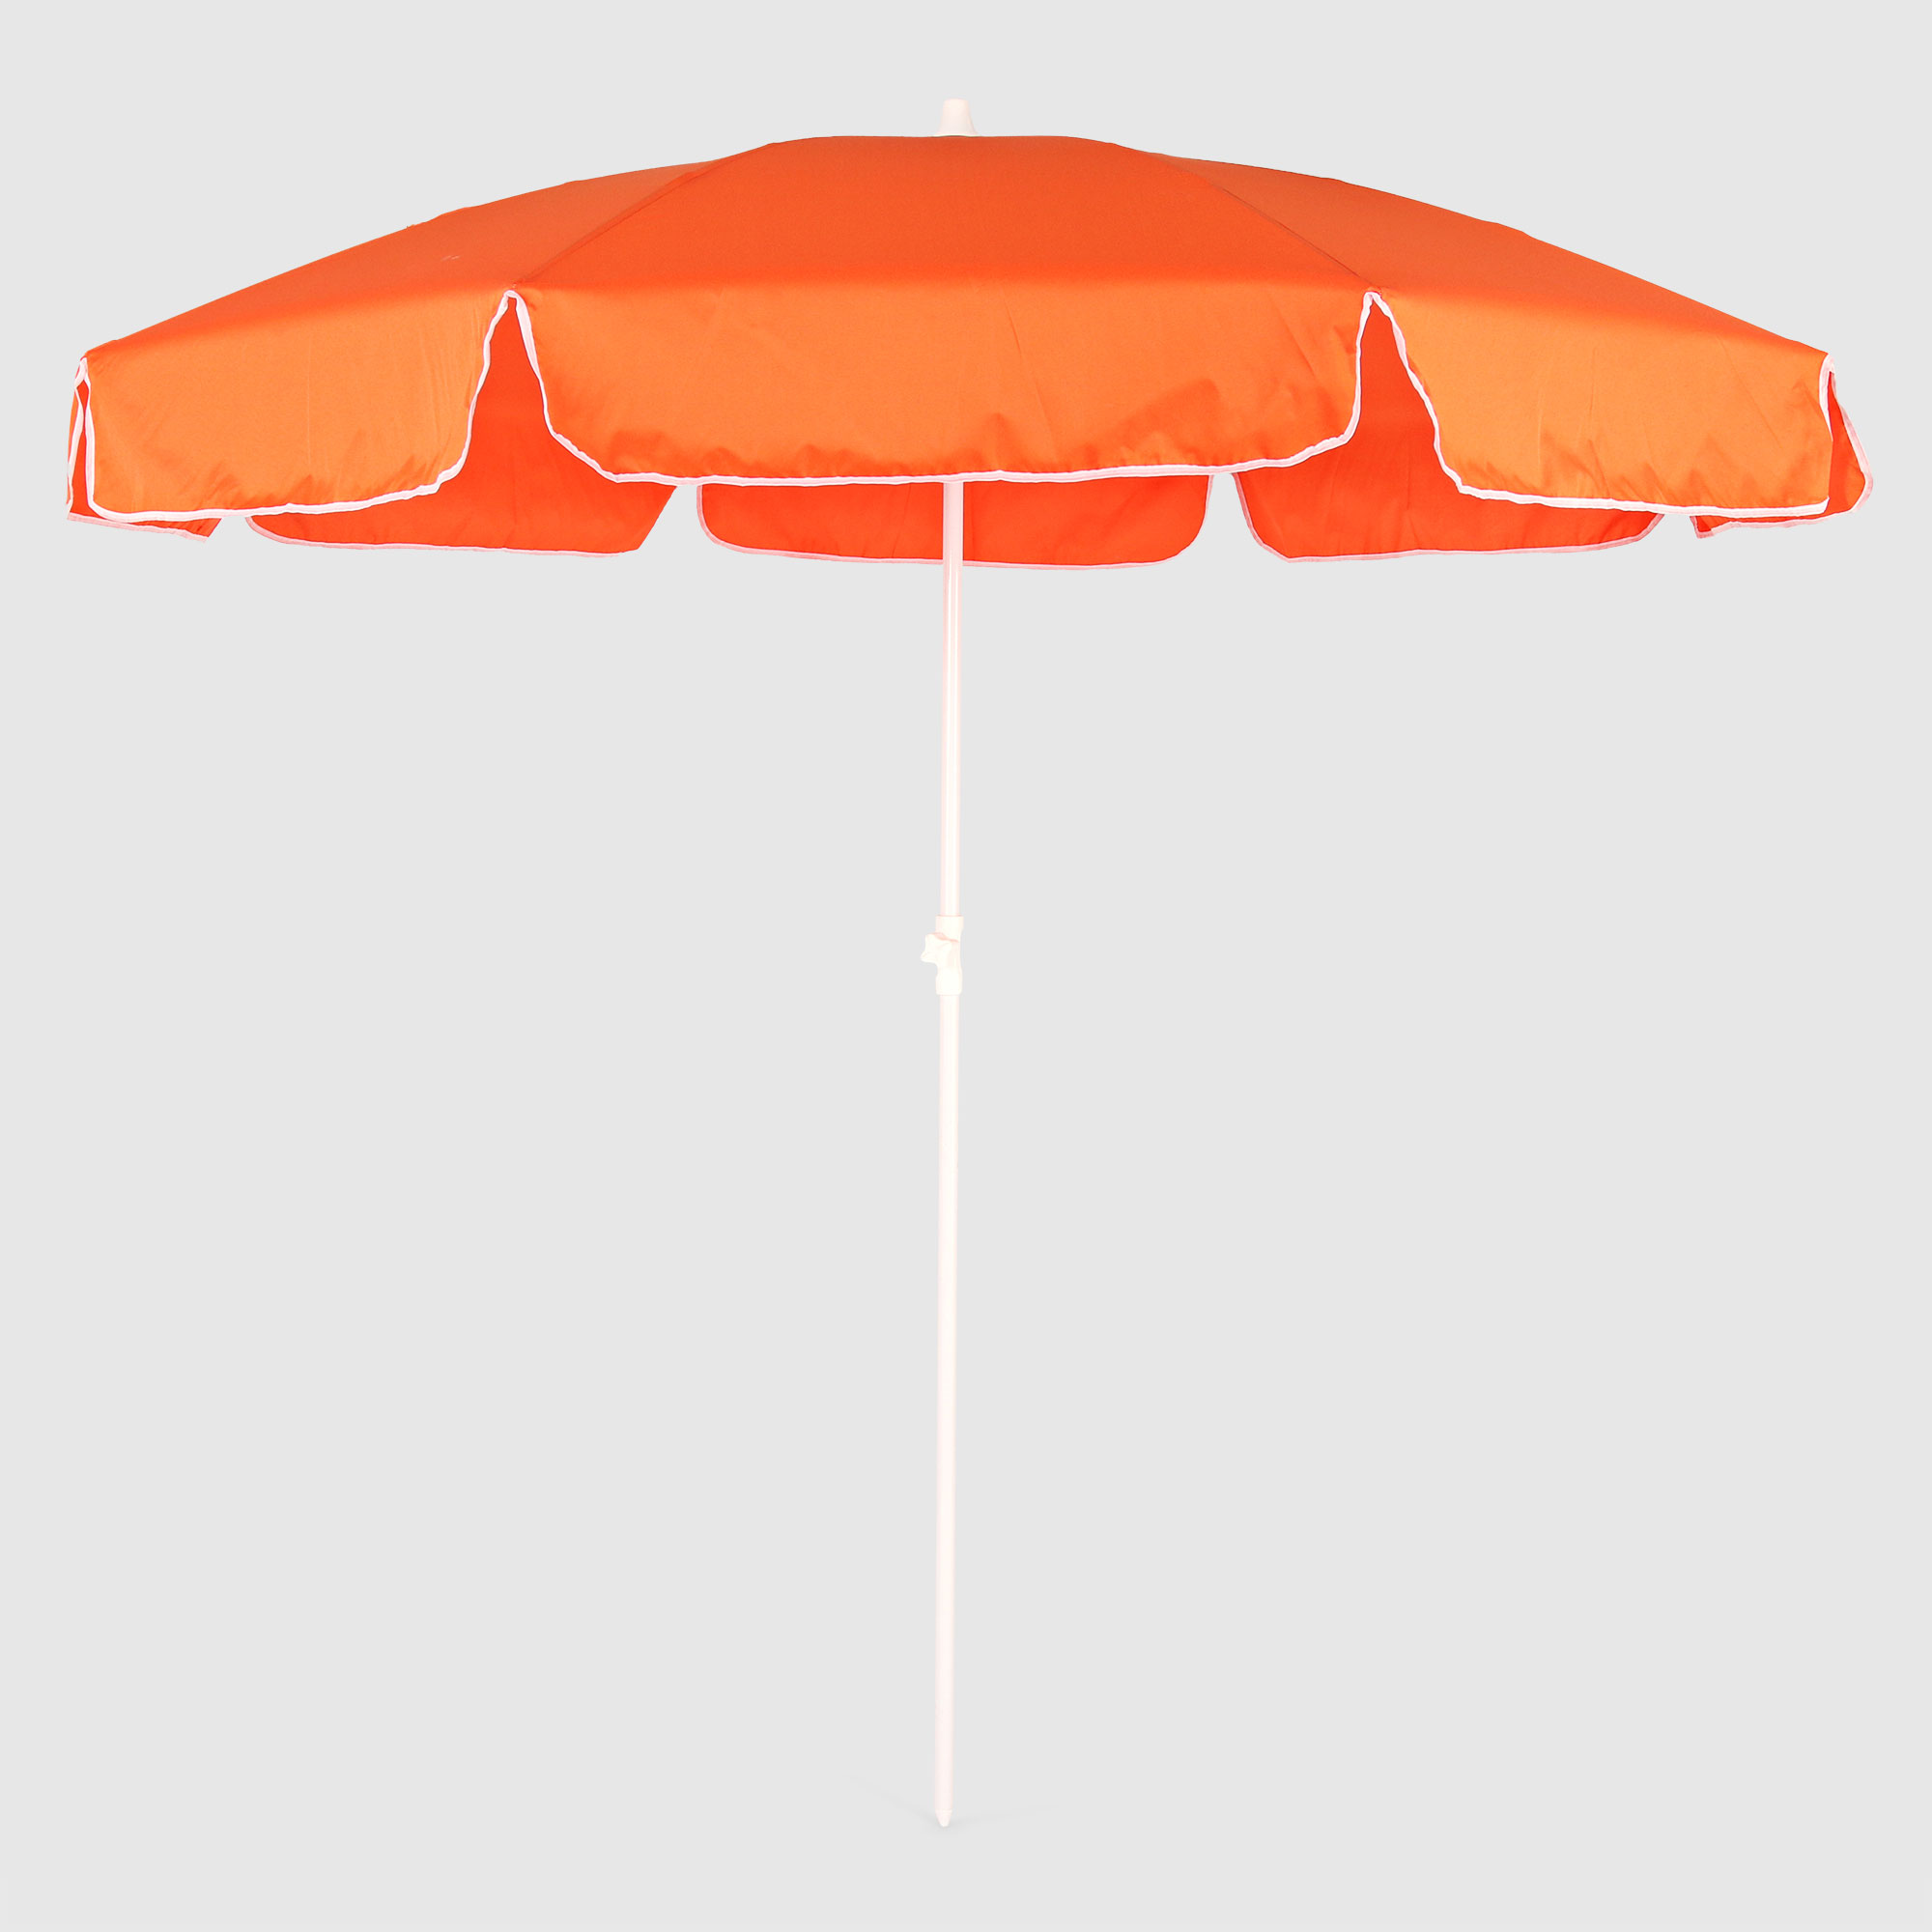 Пляжный зонт ODS оранжевый с белым 200/8 купол зонта стихи